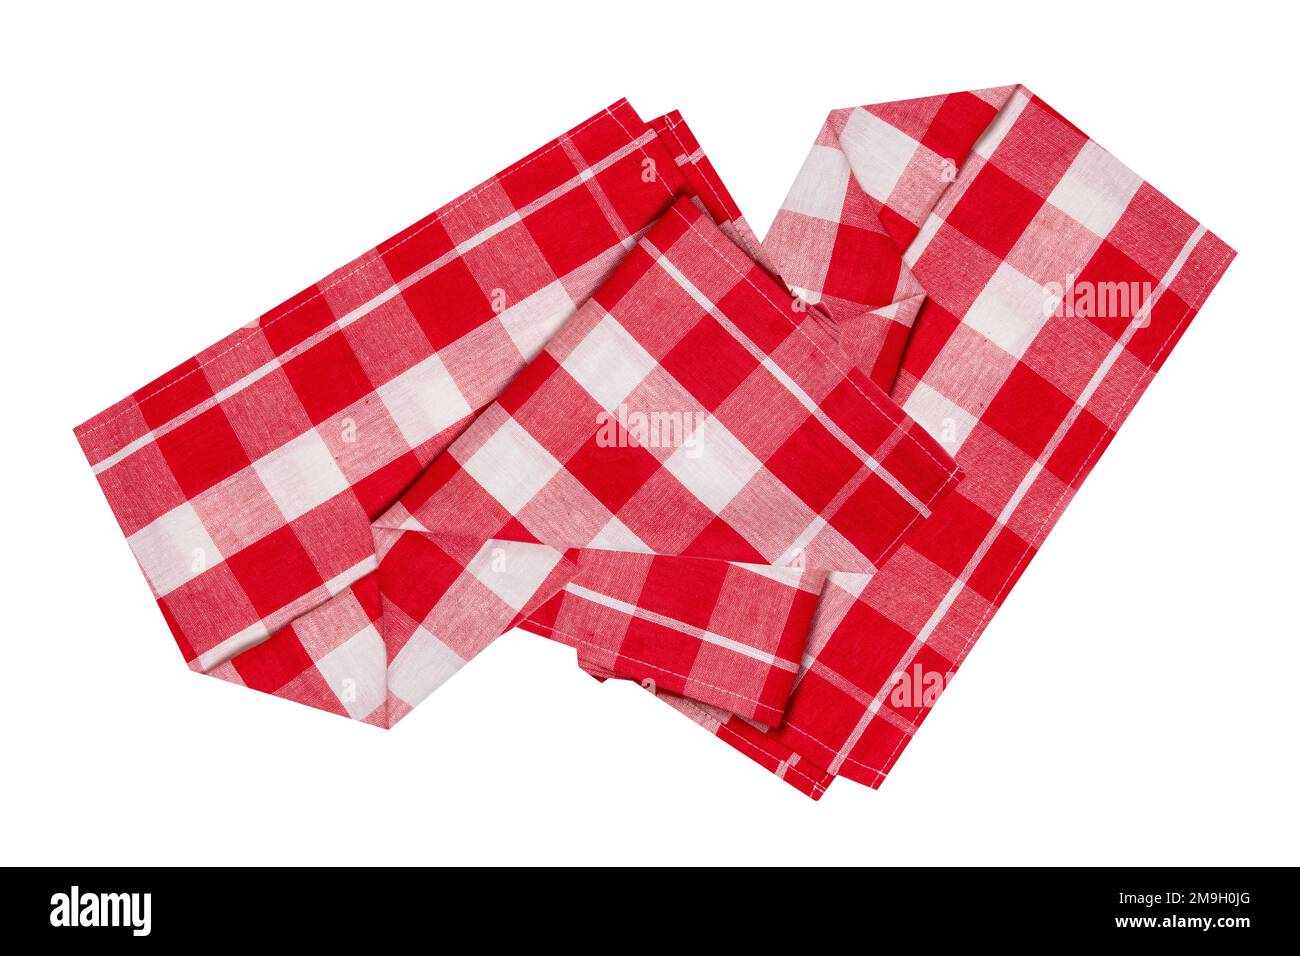 Nahaufnahme einer rot-weiß karierten Serviette oder Tischdecke, isoliert auf weißem Hintergrund. Beschneidungspfad. Küchenzubehör. Stockfoto